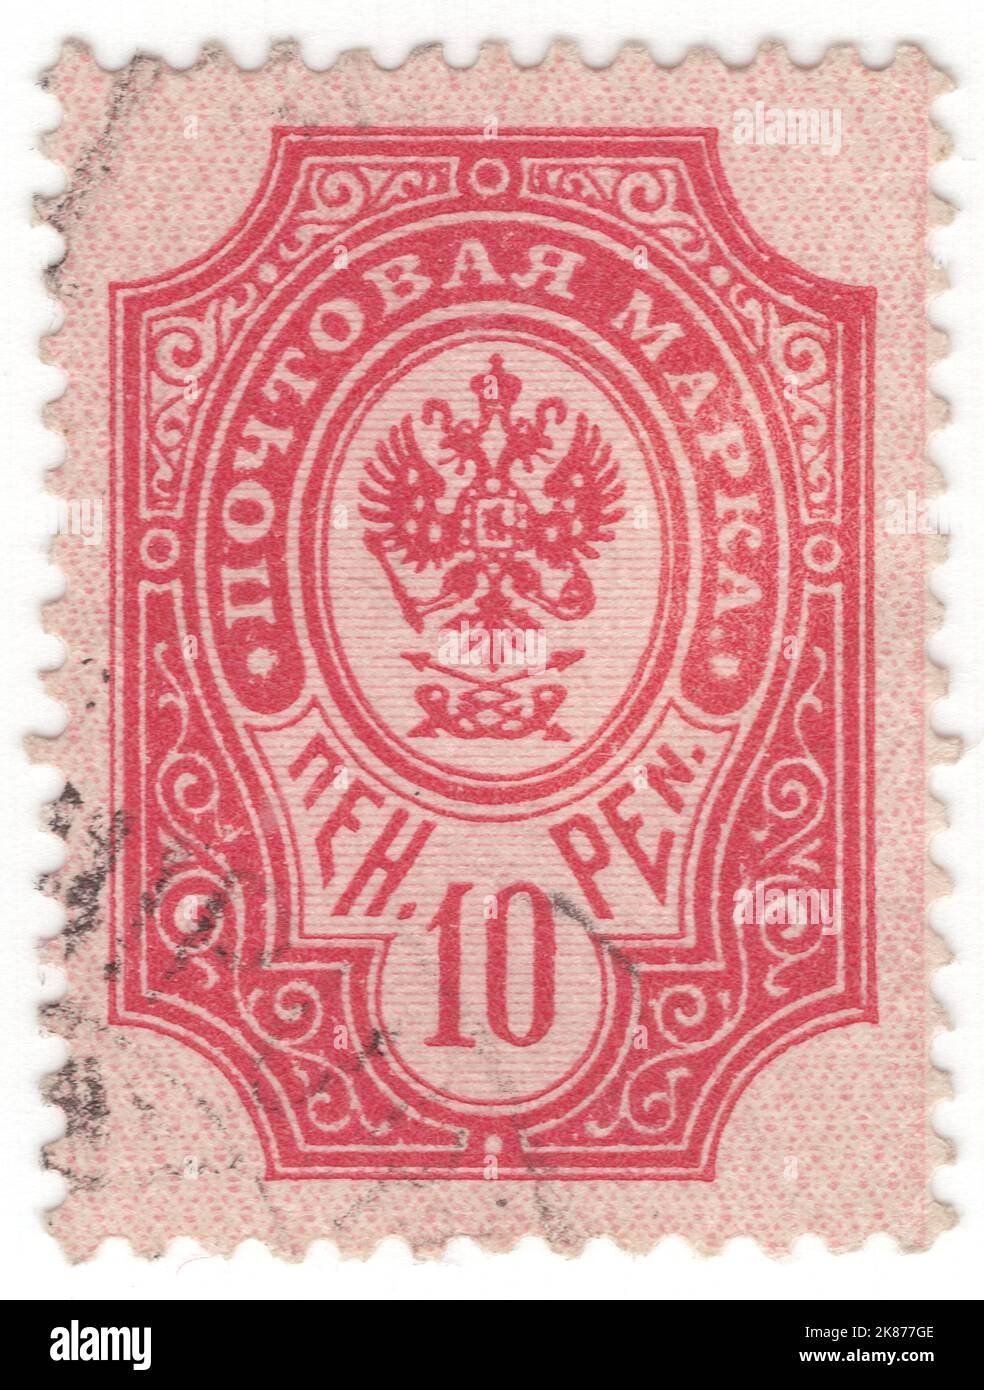 Soviet Postage Stamp Collecting Album, Vintage Soviet Stamp Book